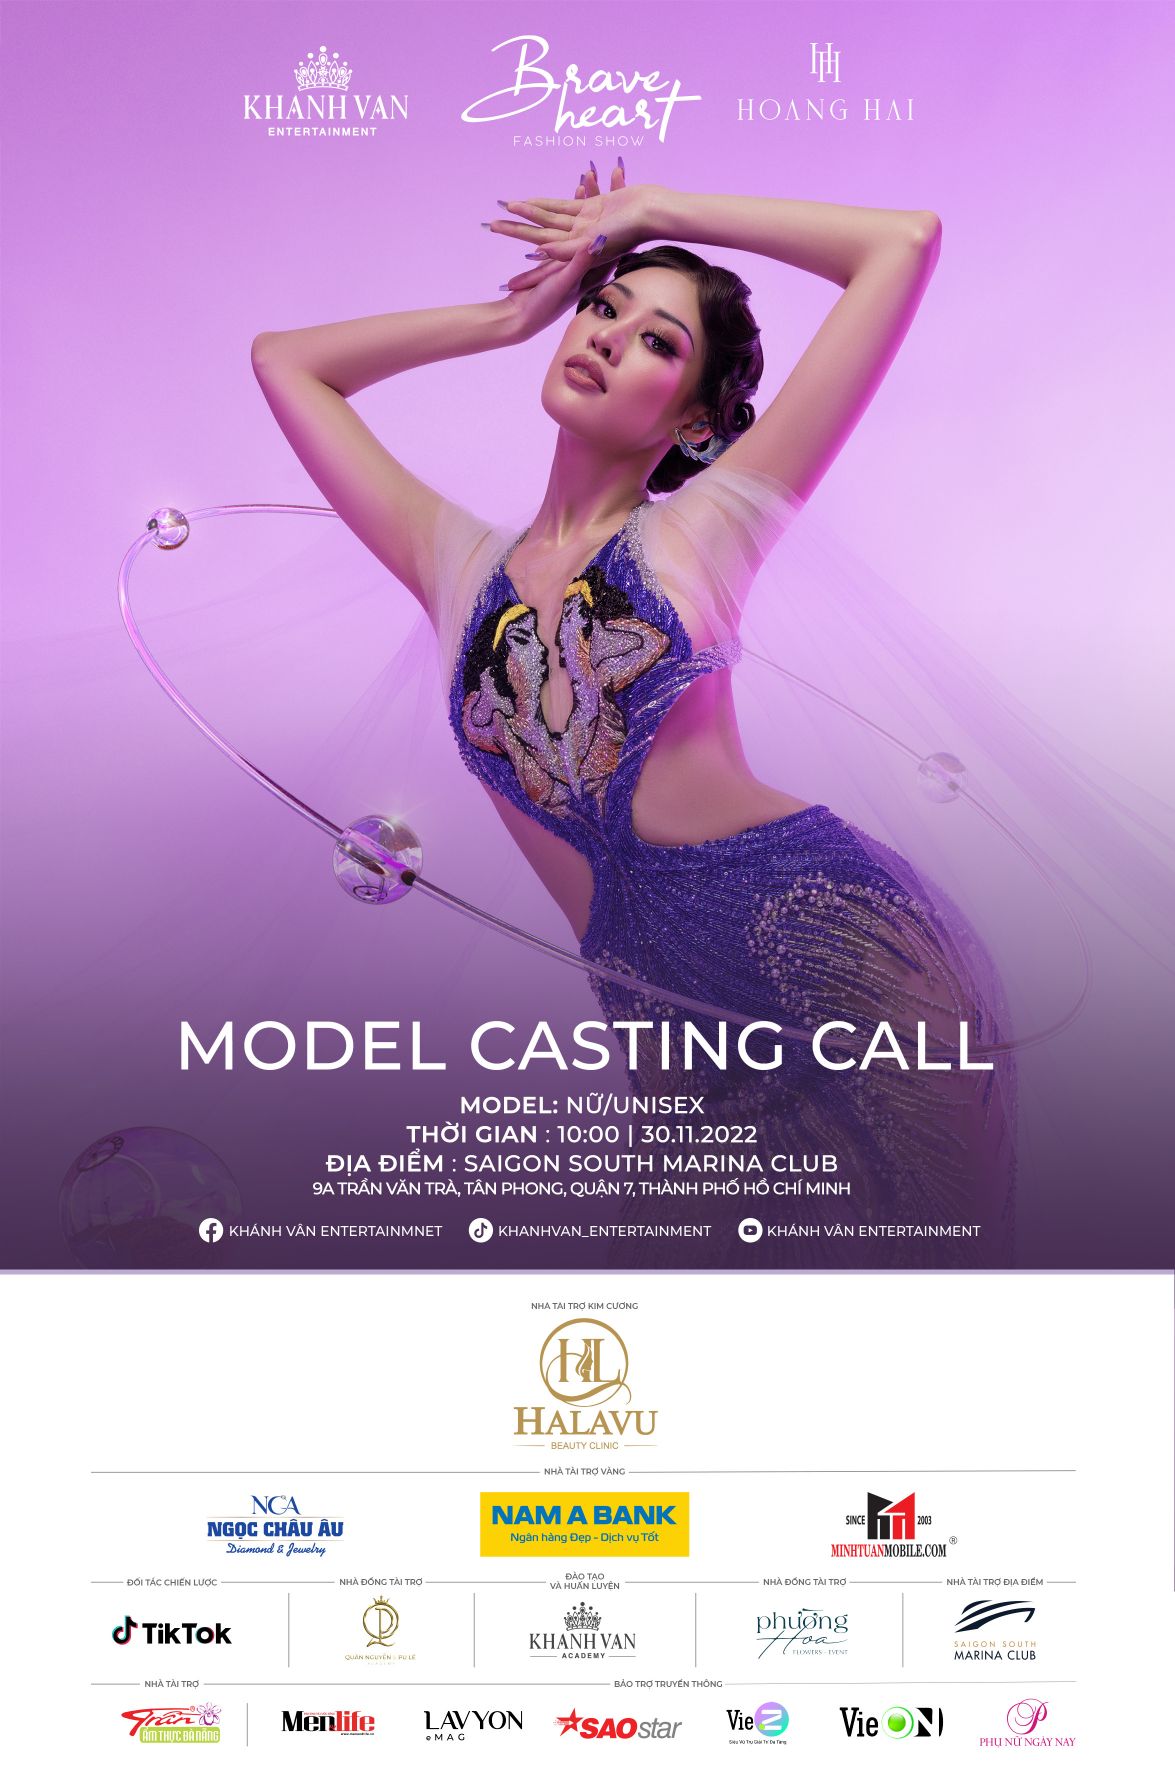 Casting Call NTK Hoang Hai Khánh Vân tuyển chọn người mẫu trình diễn cho Brave Heart Fashion Show 2022